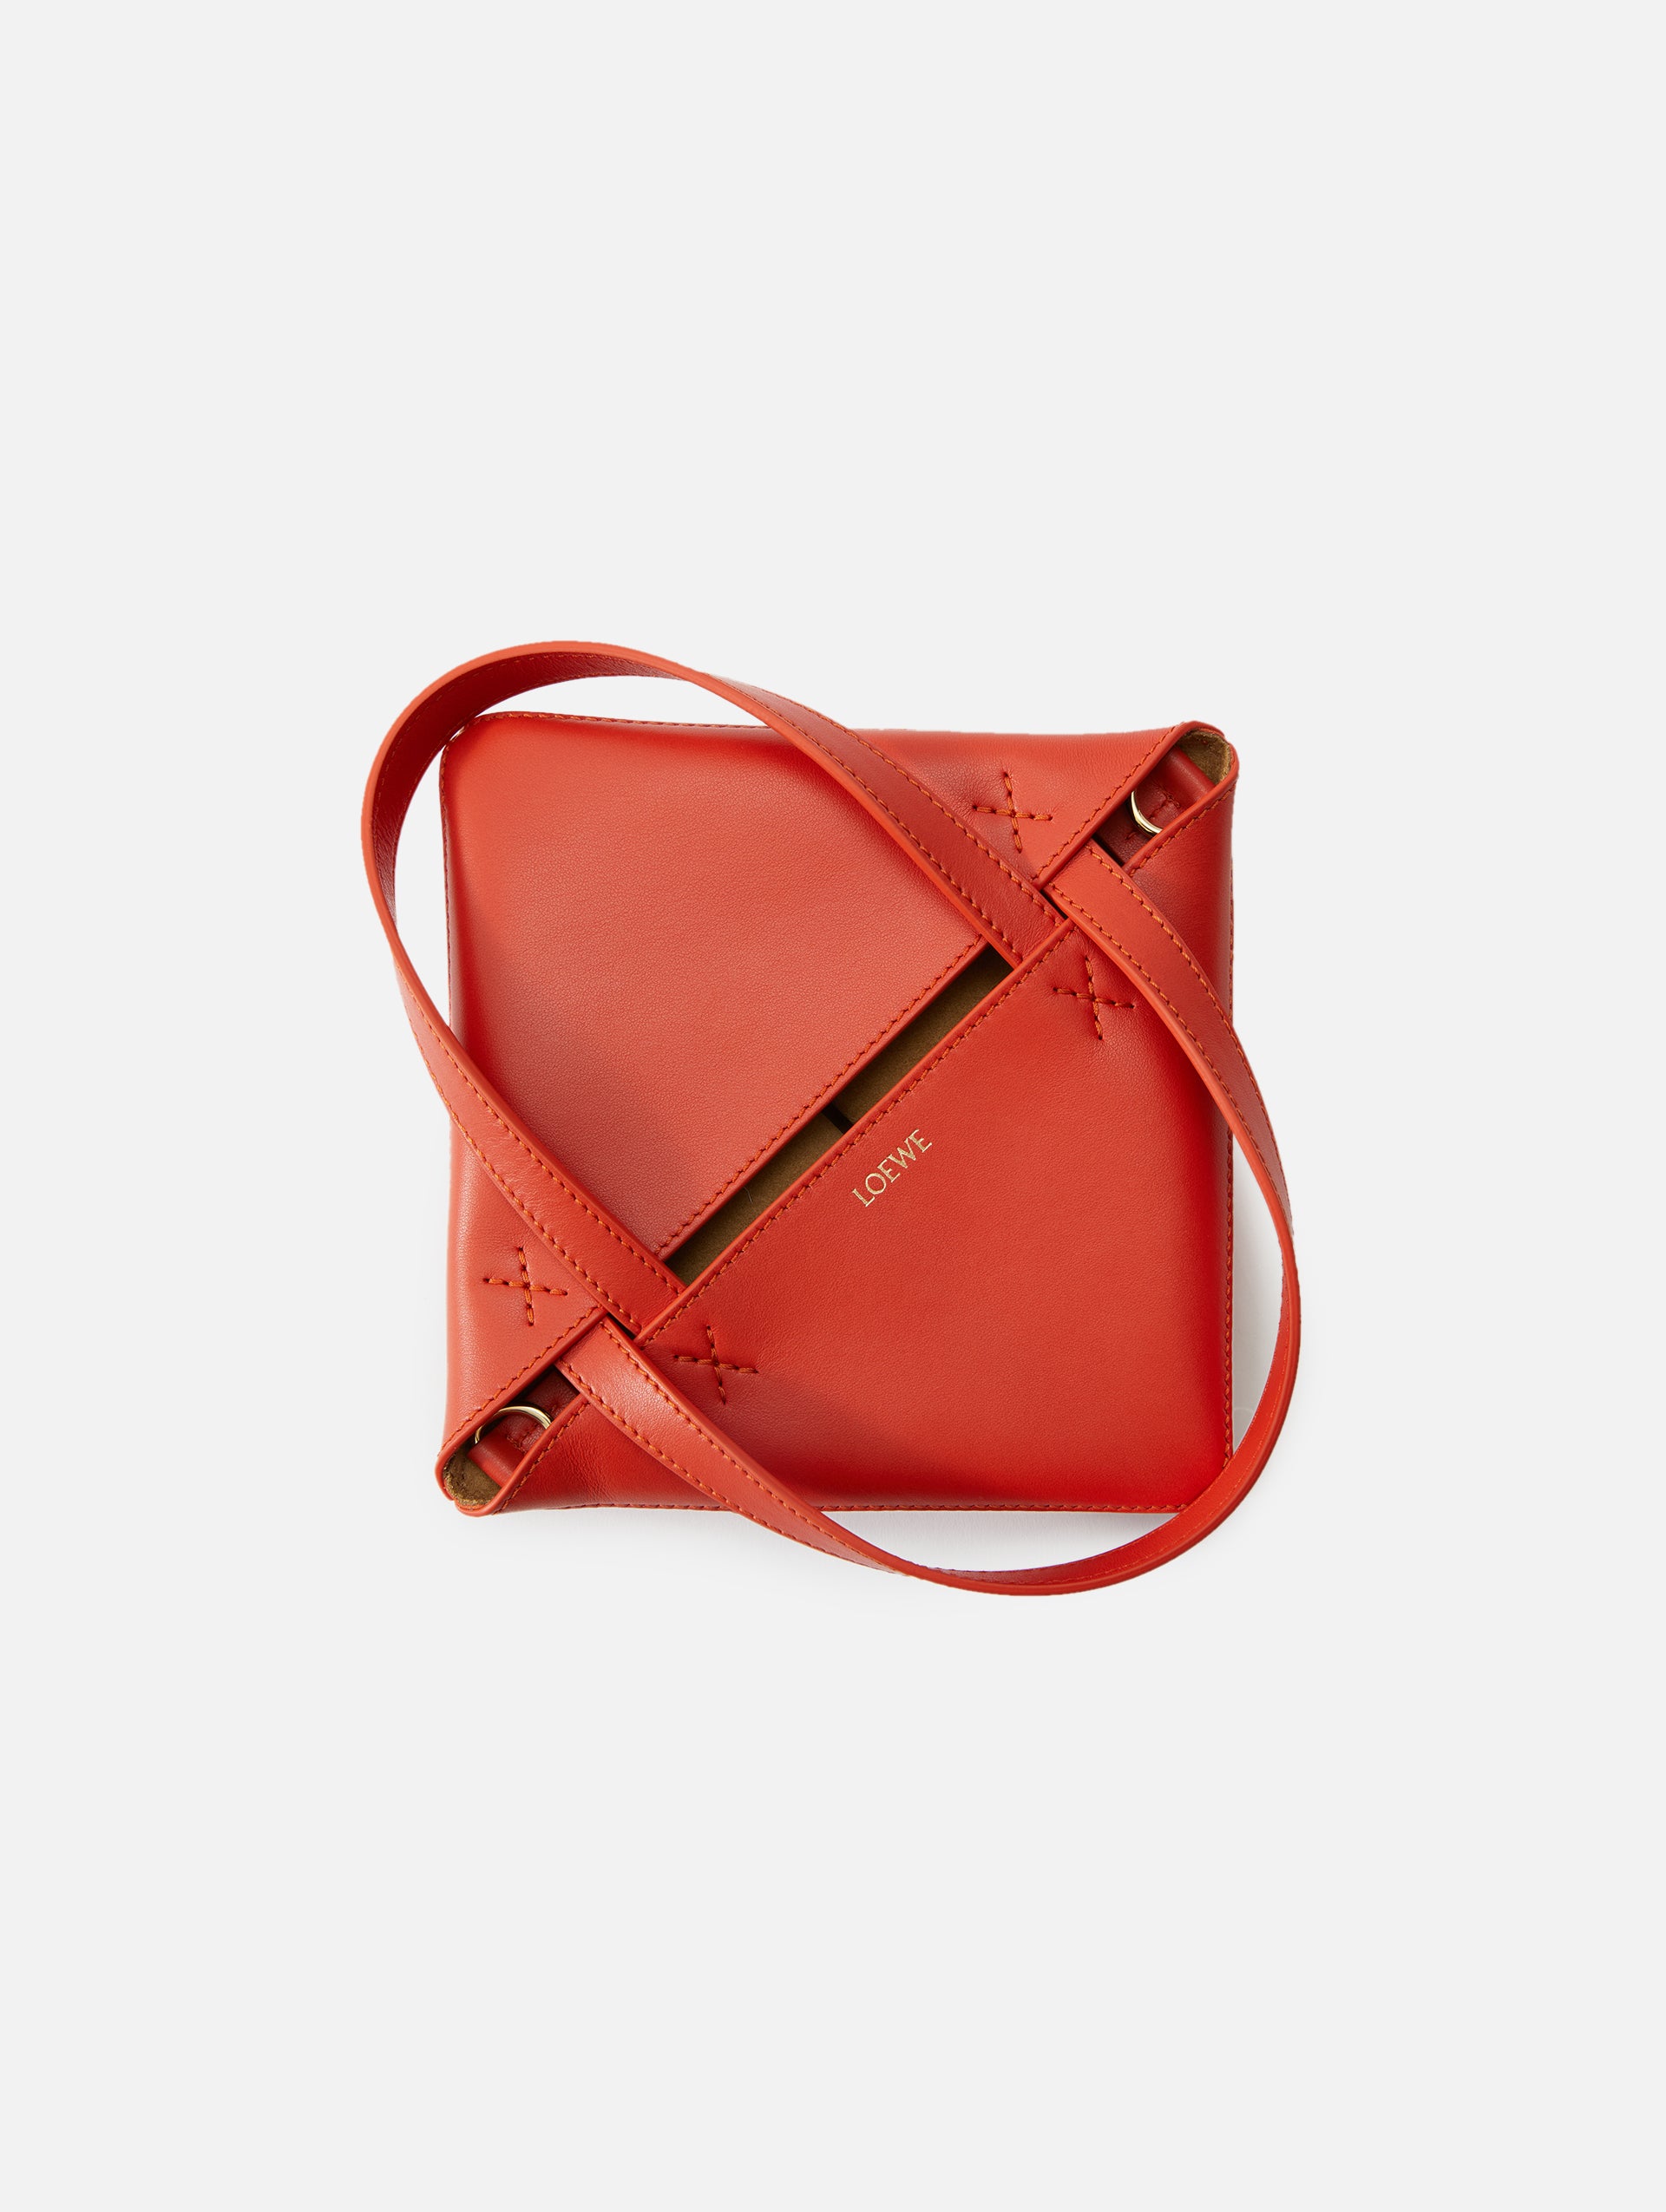 Your lockdown companion — mini monogram tote bag. Small but